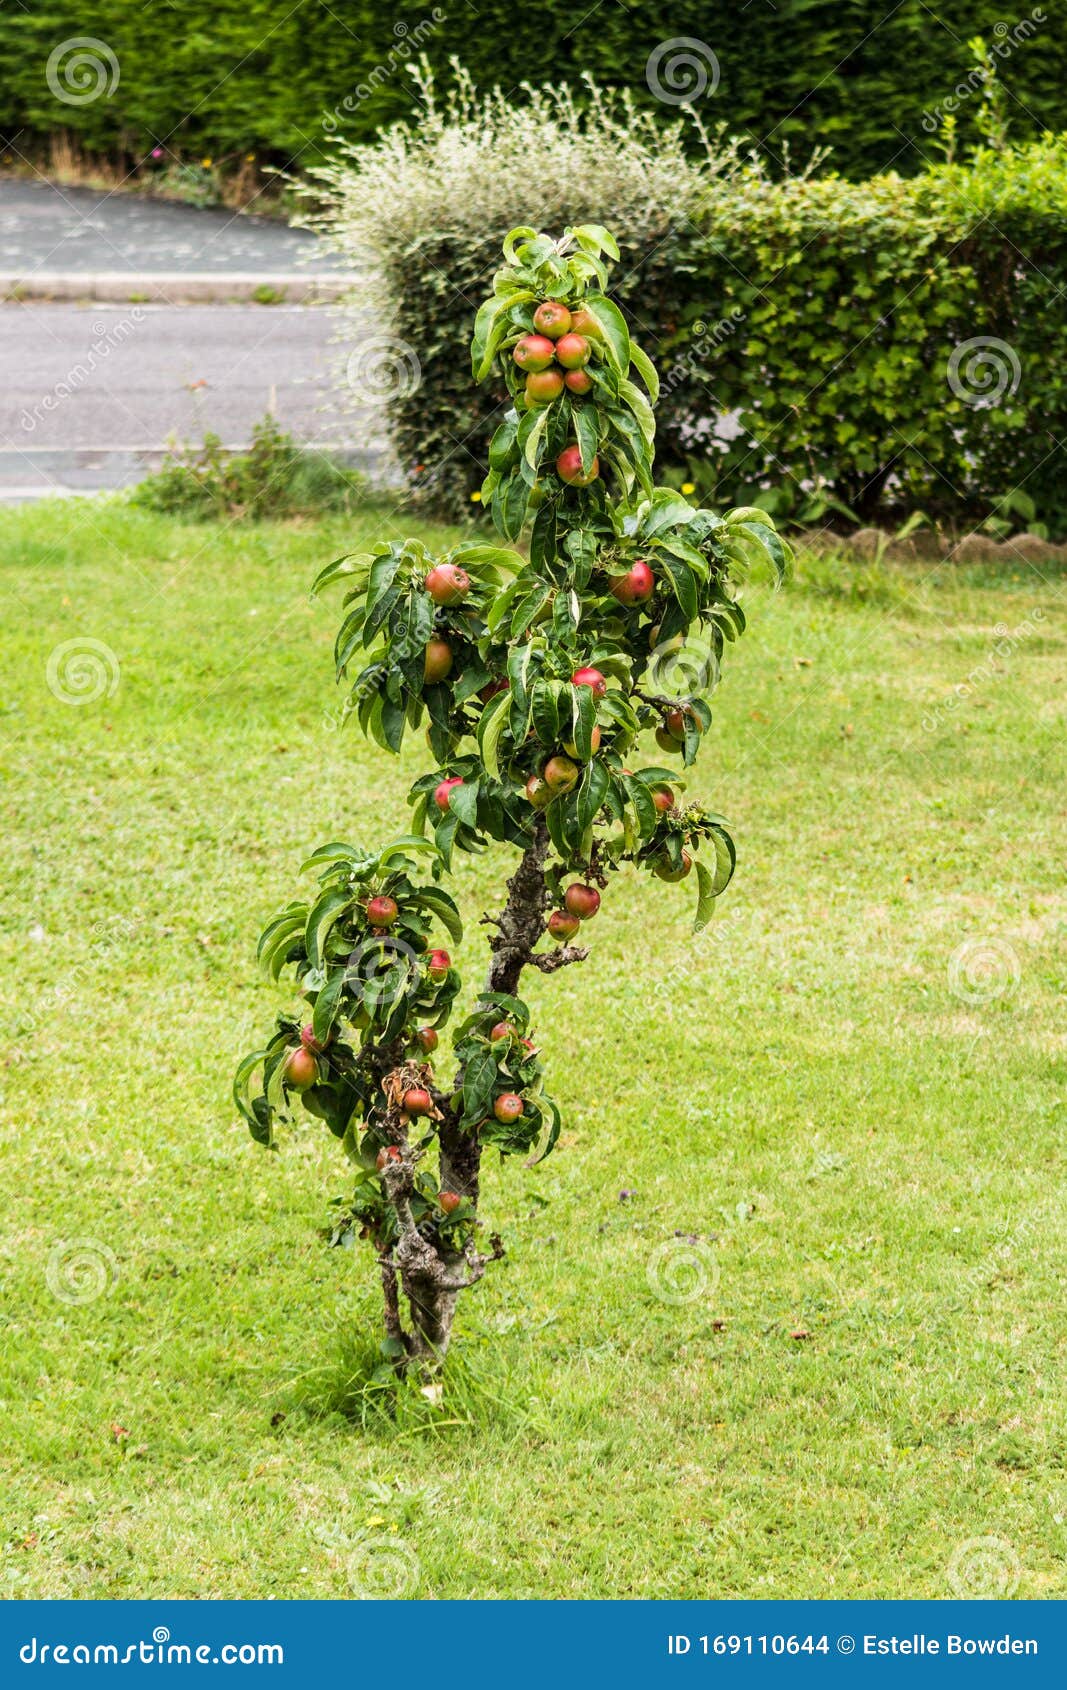 dwarf apple tree in a lawn